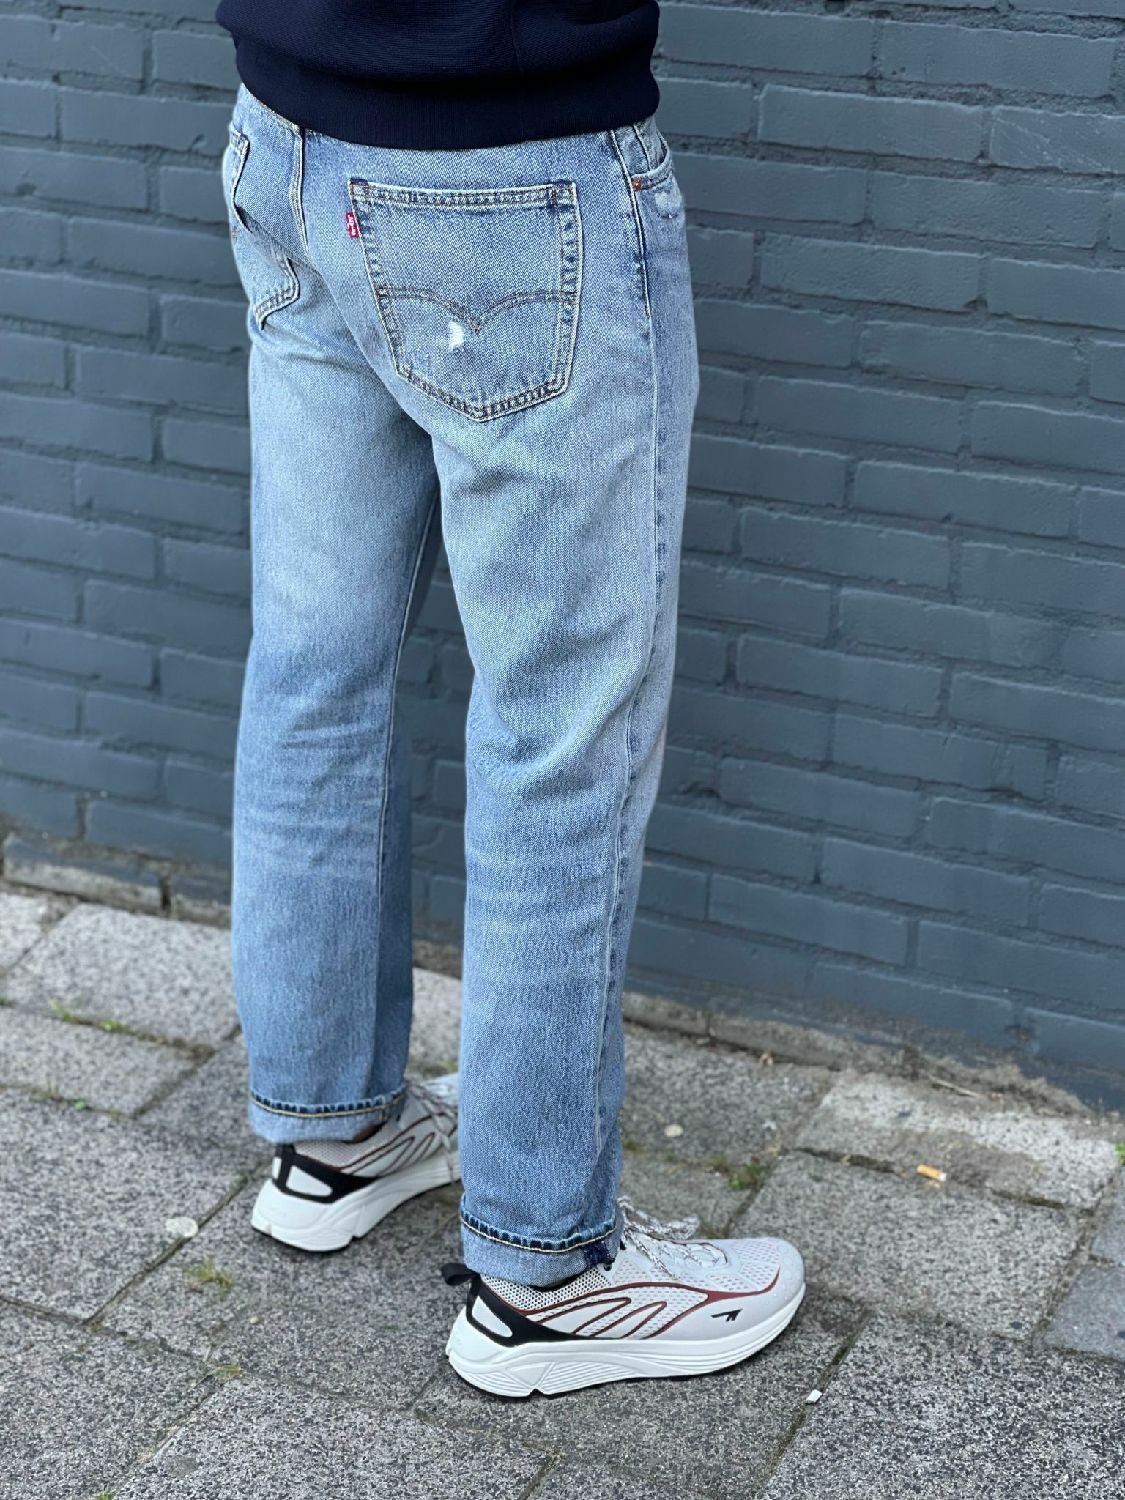 Beraadslagen Dijk Luxe Levi's heren jeans 551 Authentic straight Hula online kopen bij No Sense.  247670-0040 | Where jeans meet fashion